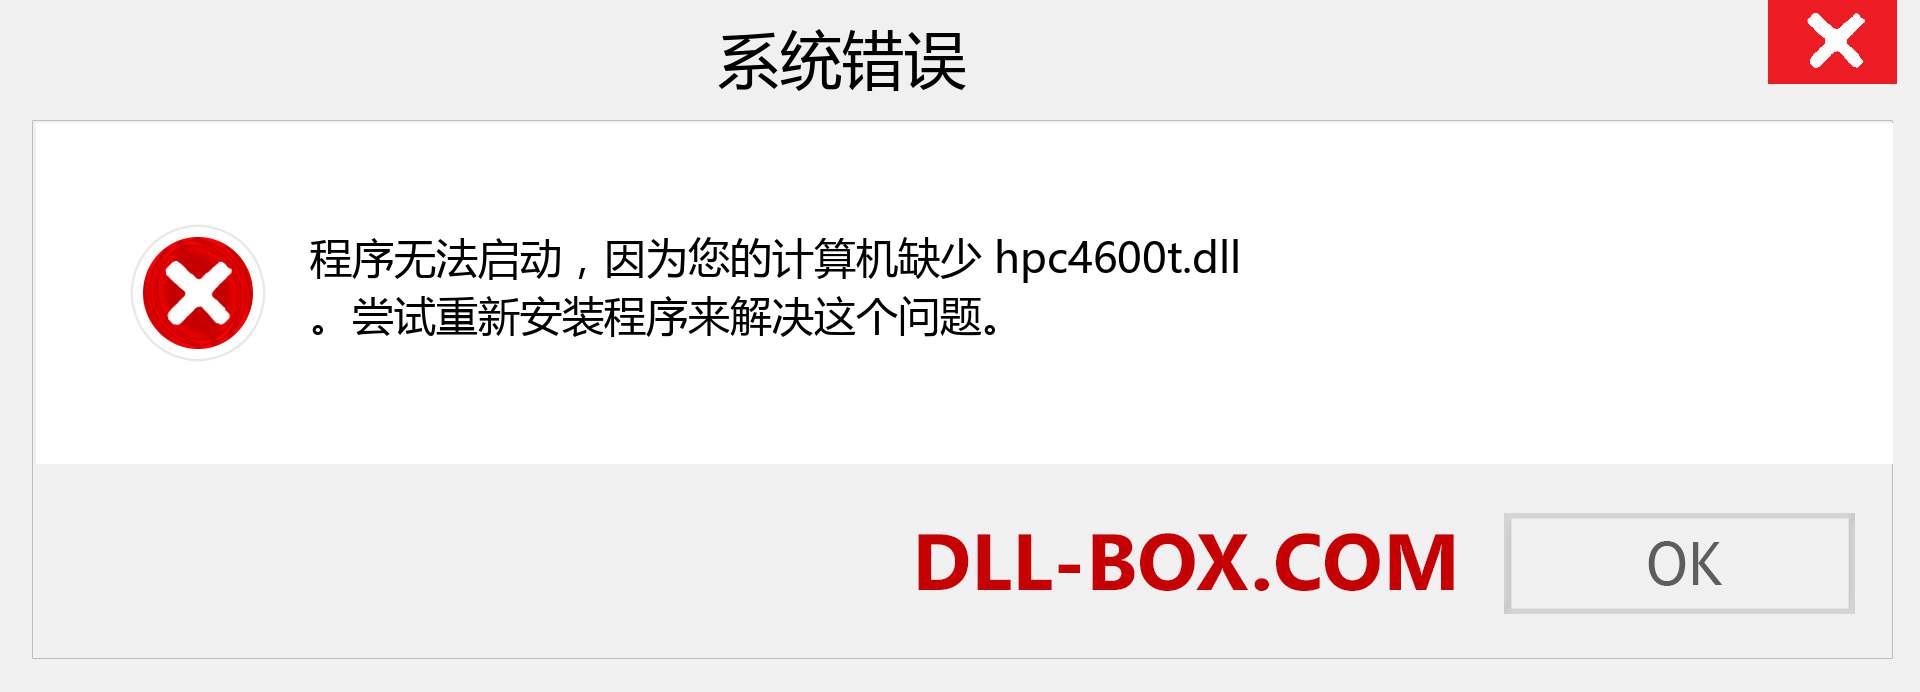 hpc4600t.dll 文件丢失？。 适用于 Windows 7、8、10 的下载 - 修复 Windows、照片、图像上的 hpc4600t dll 丢失错误